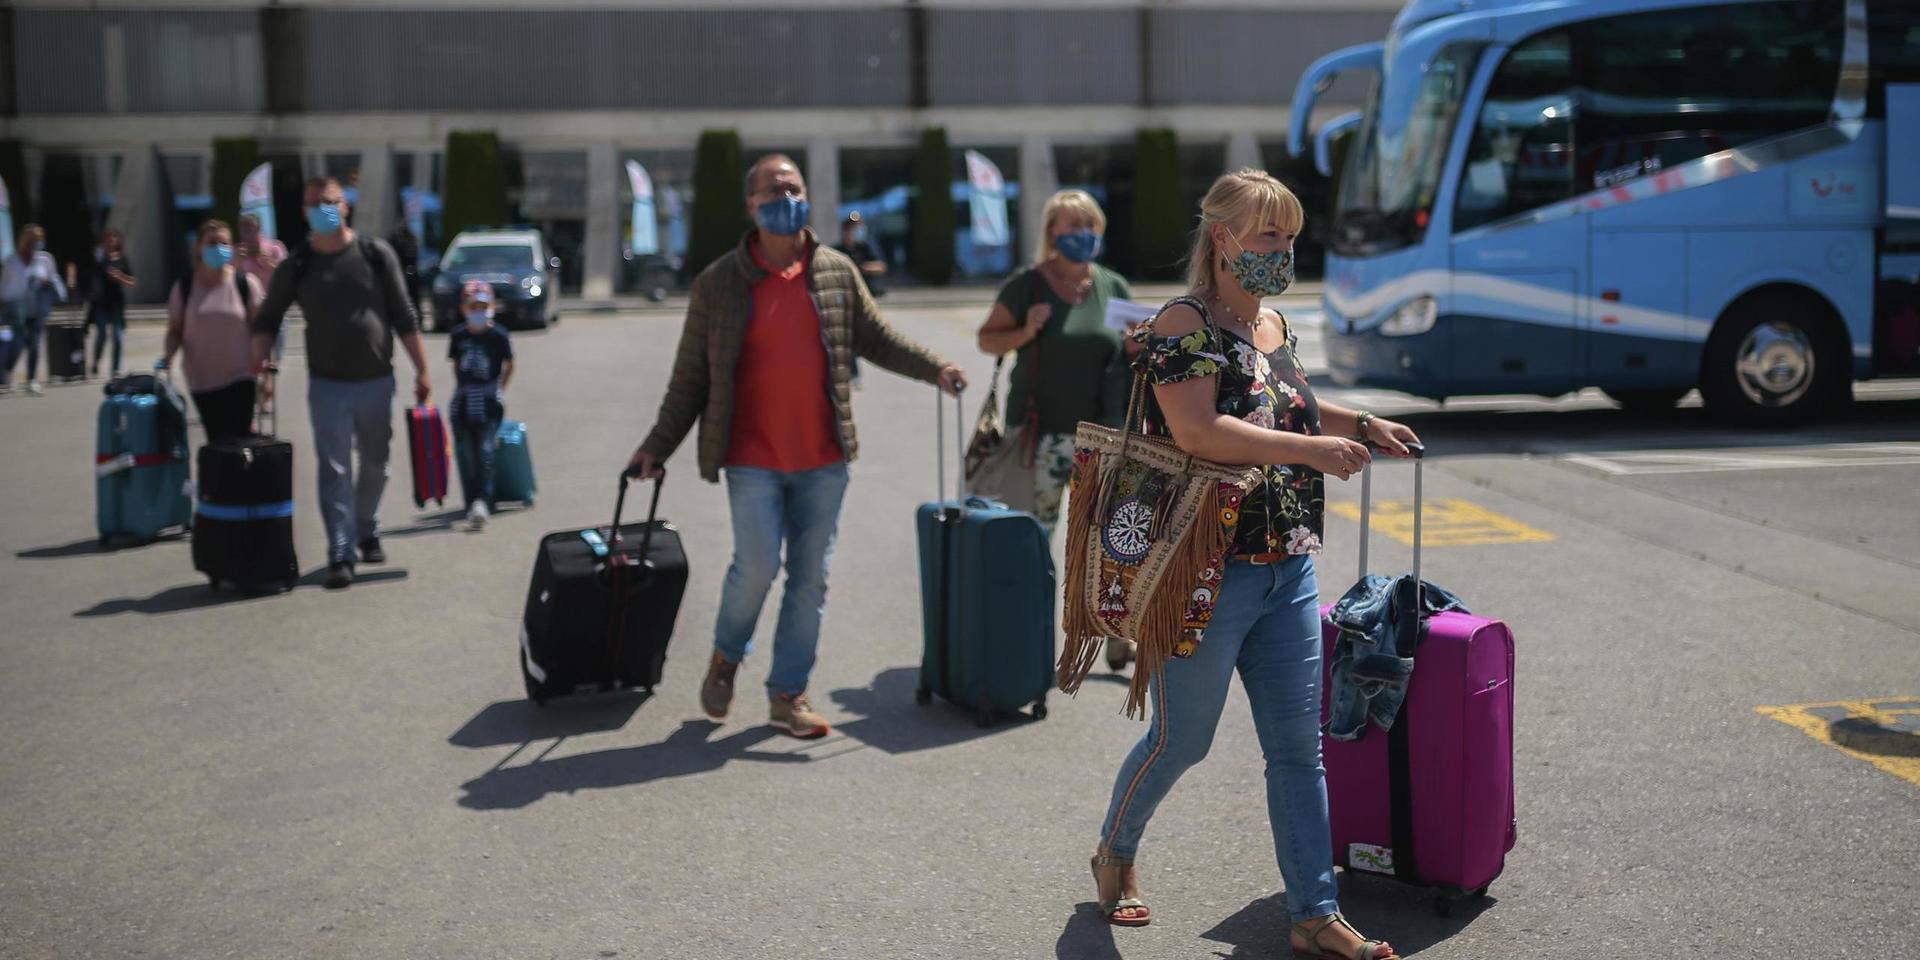 Turister anländer på flygplatsen i Palma, Mallorca i juni 2020. Spanien är ett av de länder som åter öppnat för turister och som är ett av de tio länder som även svenska utrikesdepartementet från och med den 30 juni inte längre avråder från resor till.